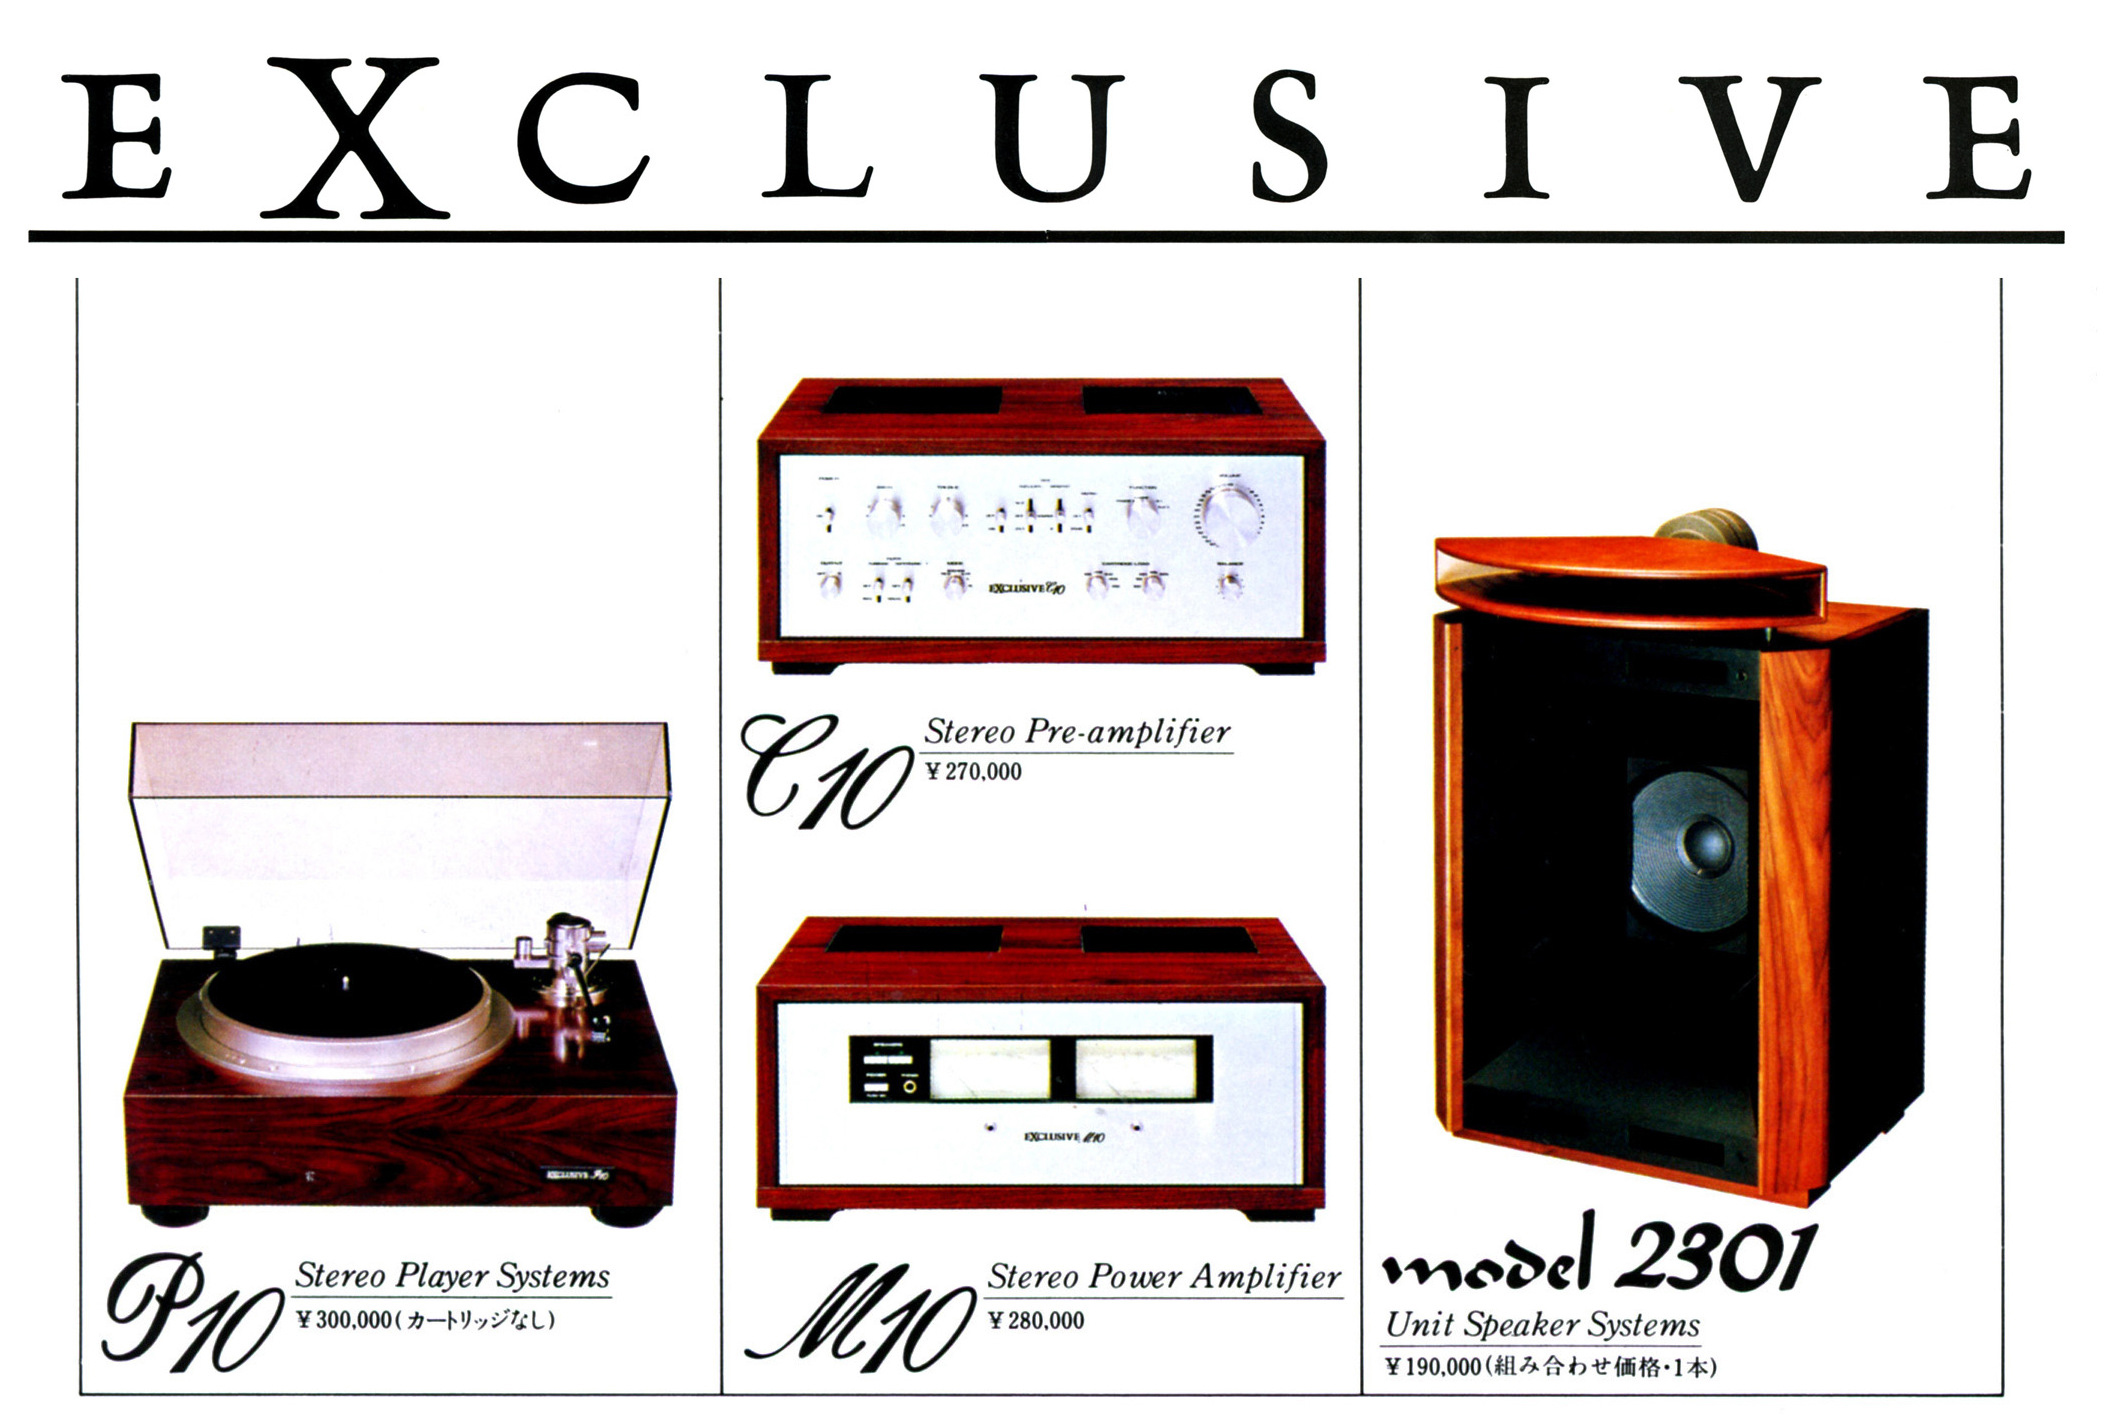 Pioneer Exclusive C-M-P-10-2301-Werbung.jpg